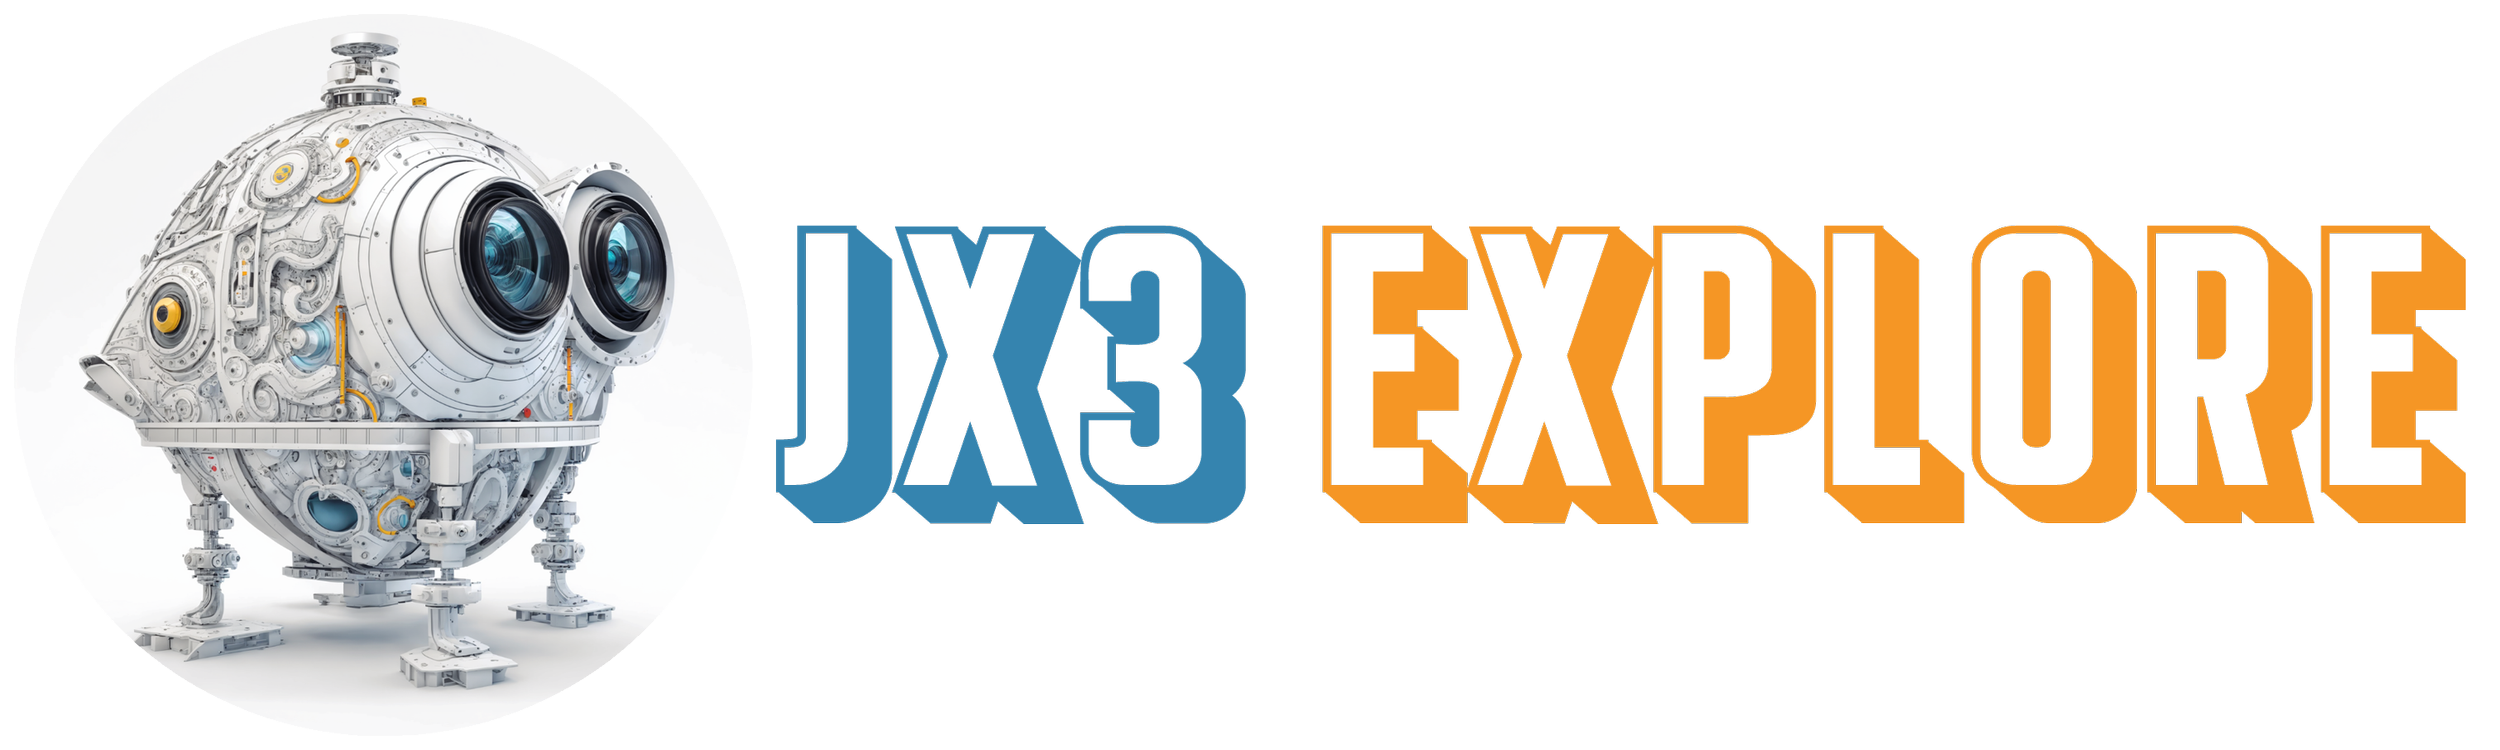 Jx3 Explore